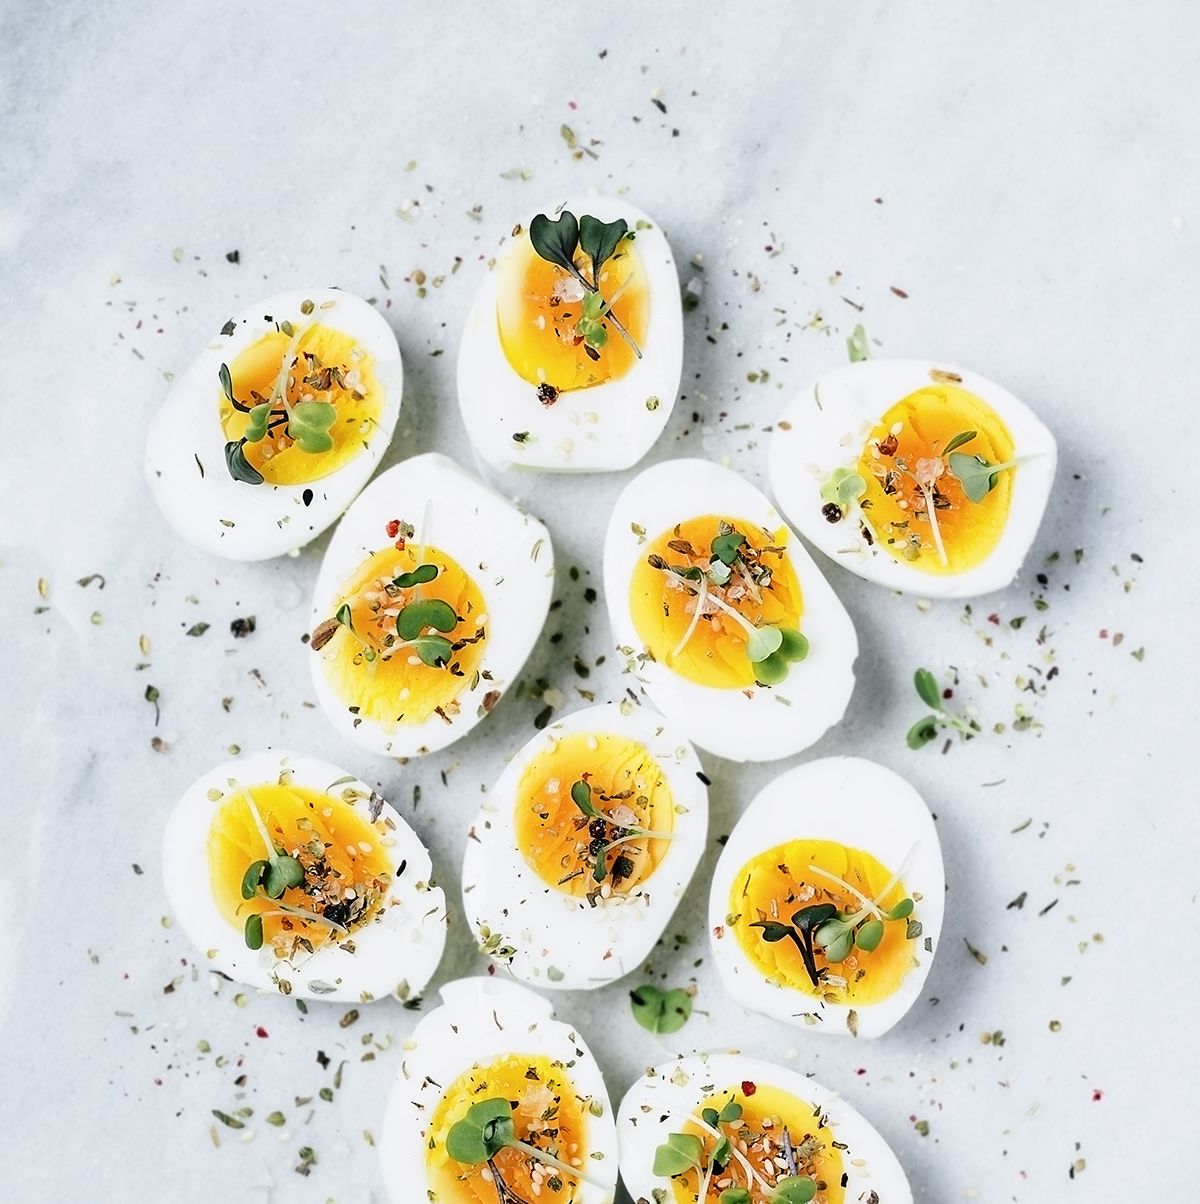 Huevos cocidos perfectos, cómo cocer huevos duros perfectos